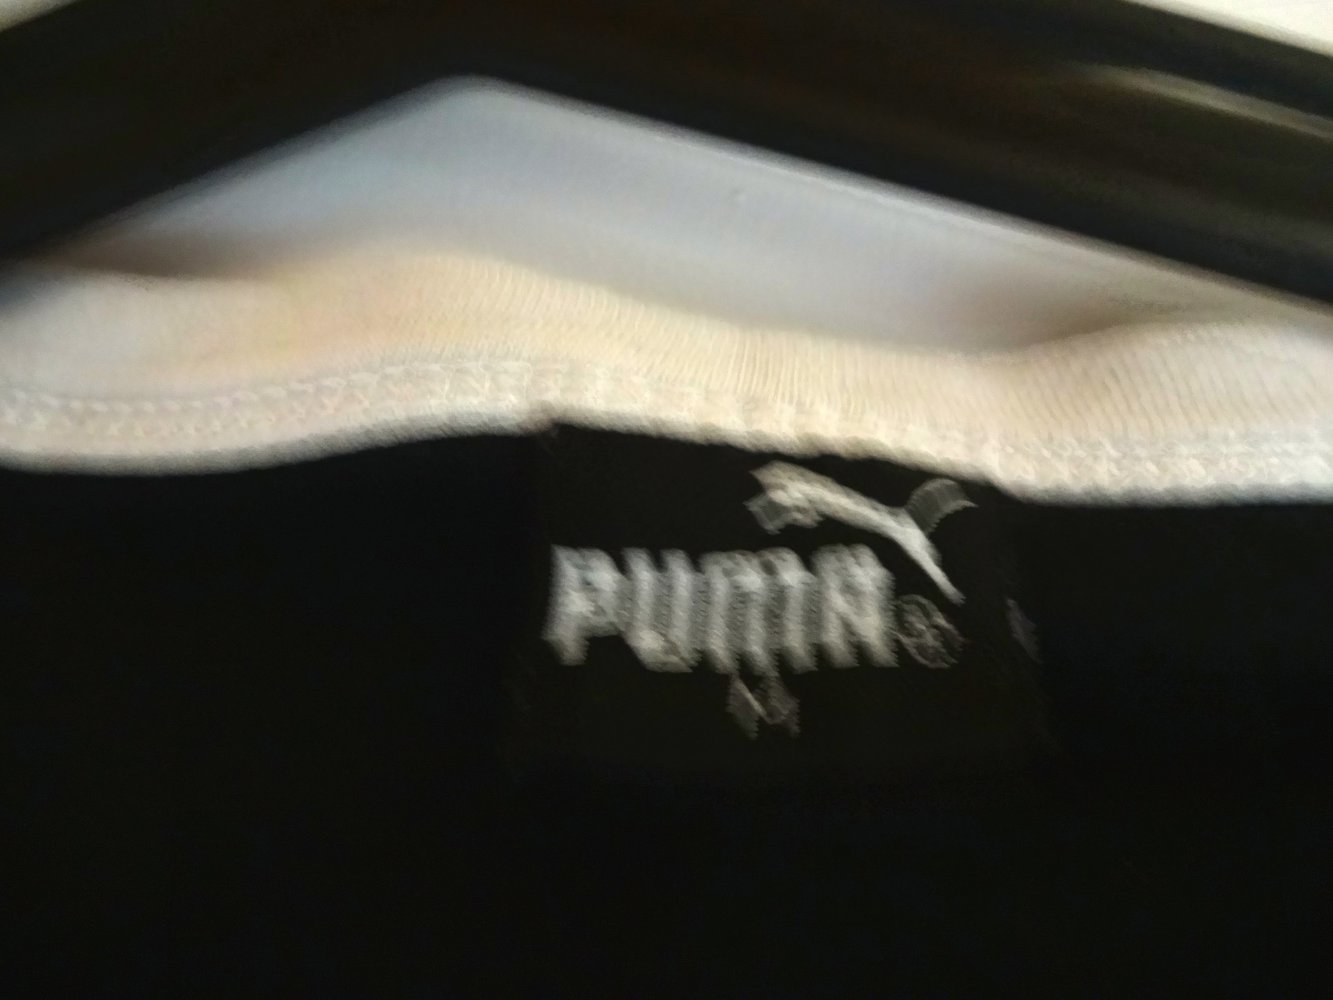 T-Shirt von Puma